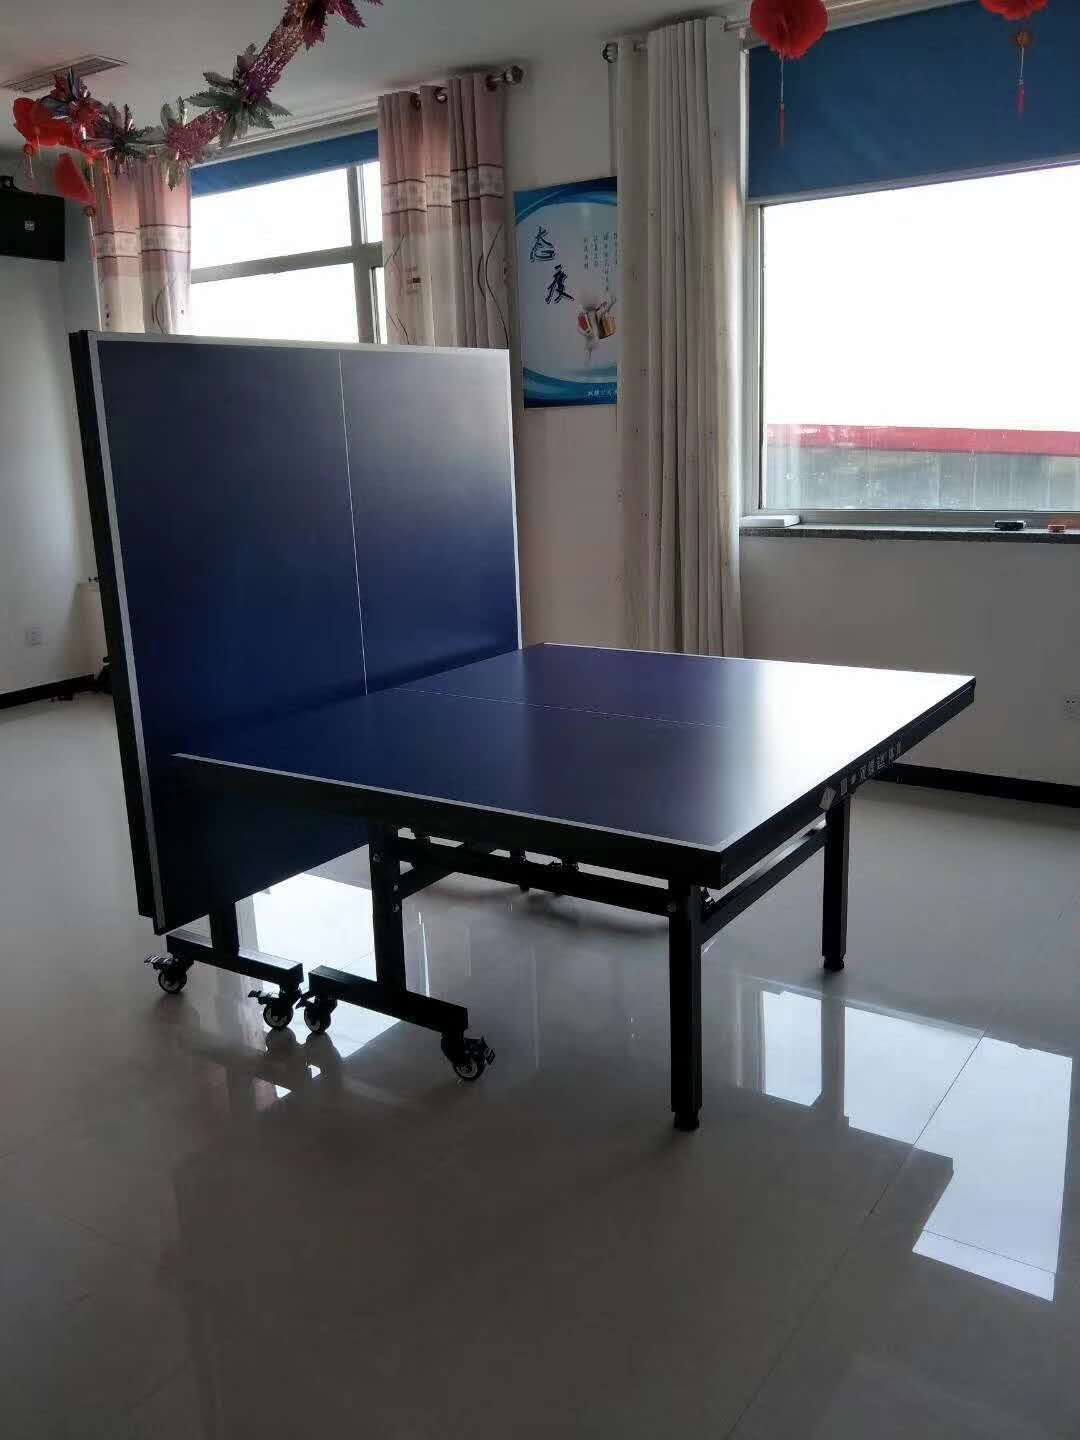 邯郸乒乓球台厂家 家用乒乓球台 使用说明介绍